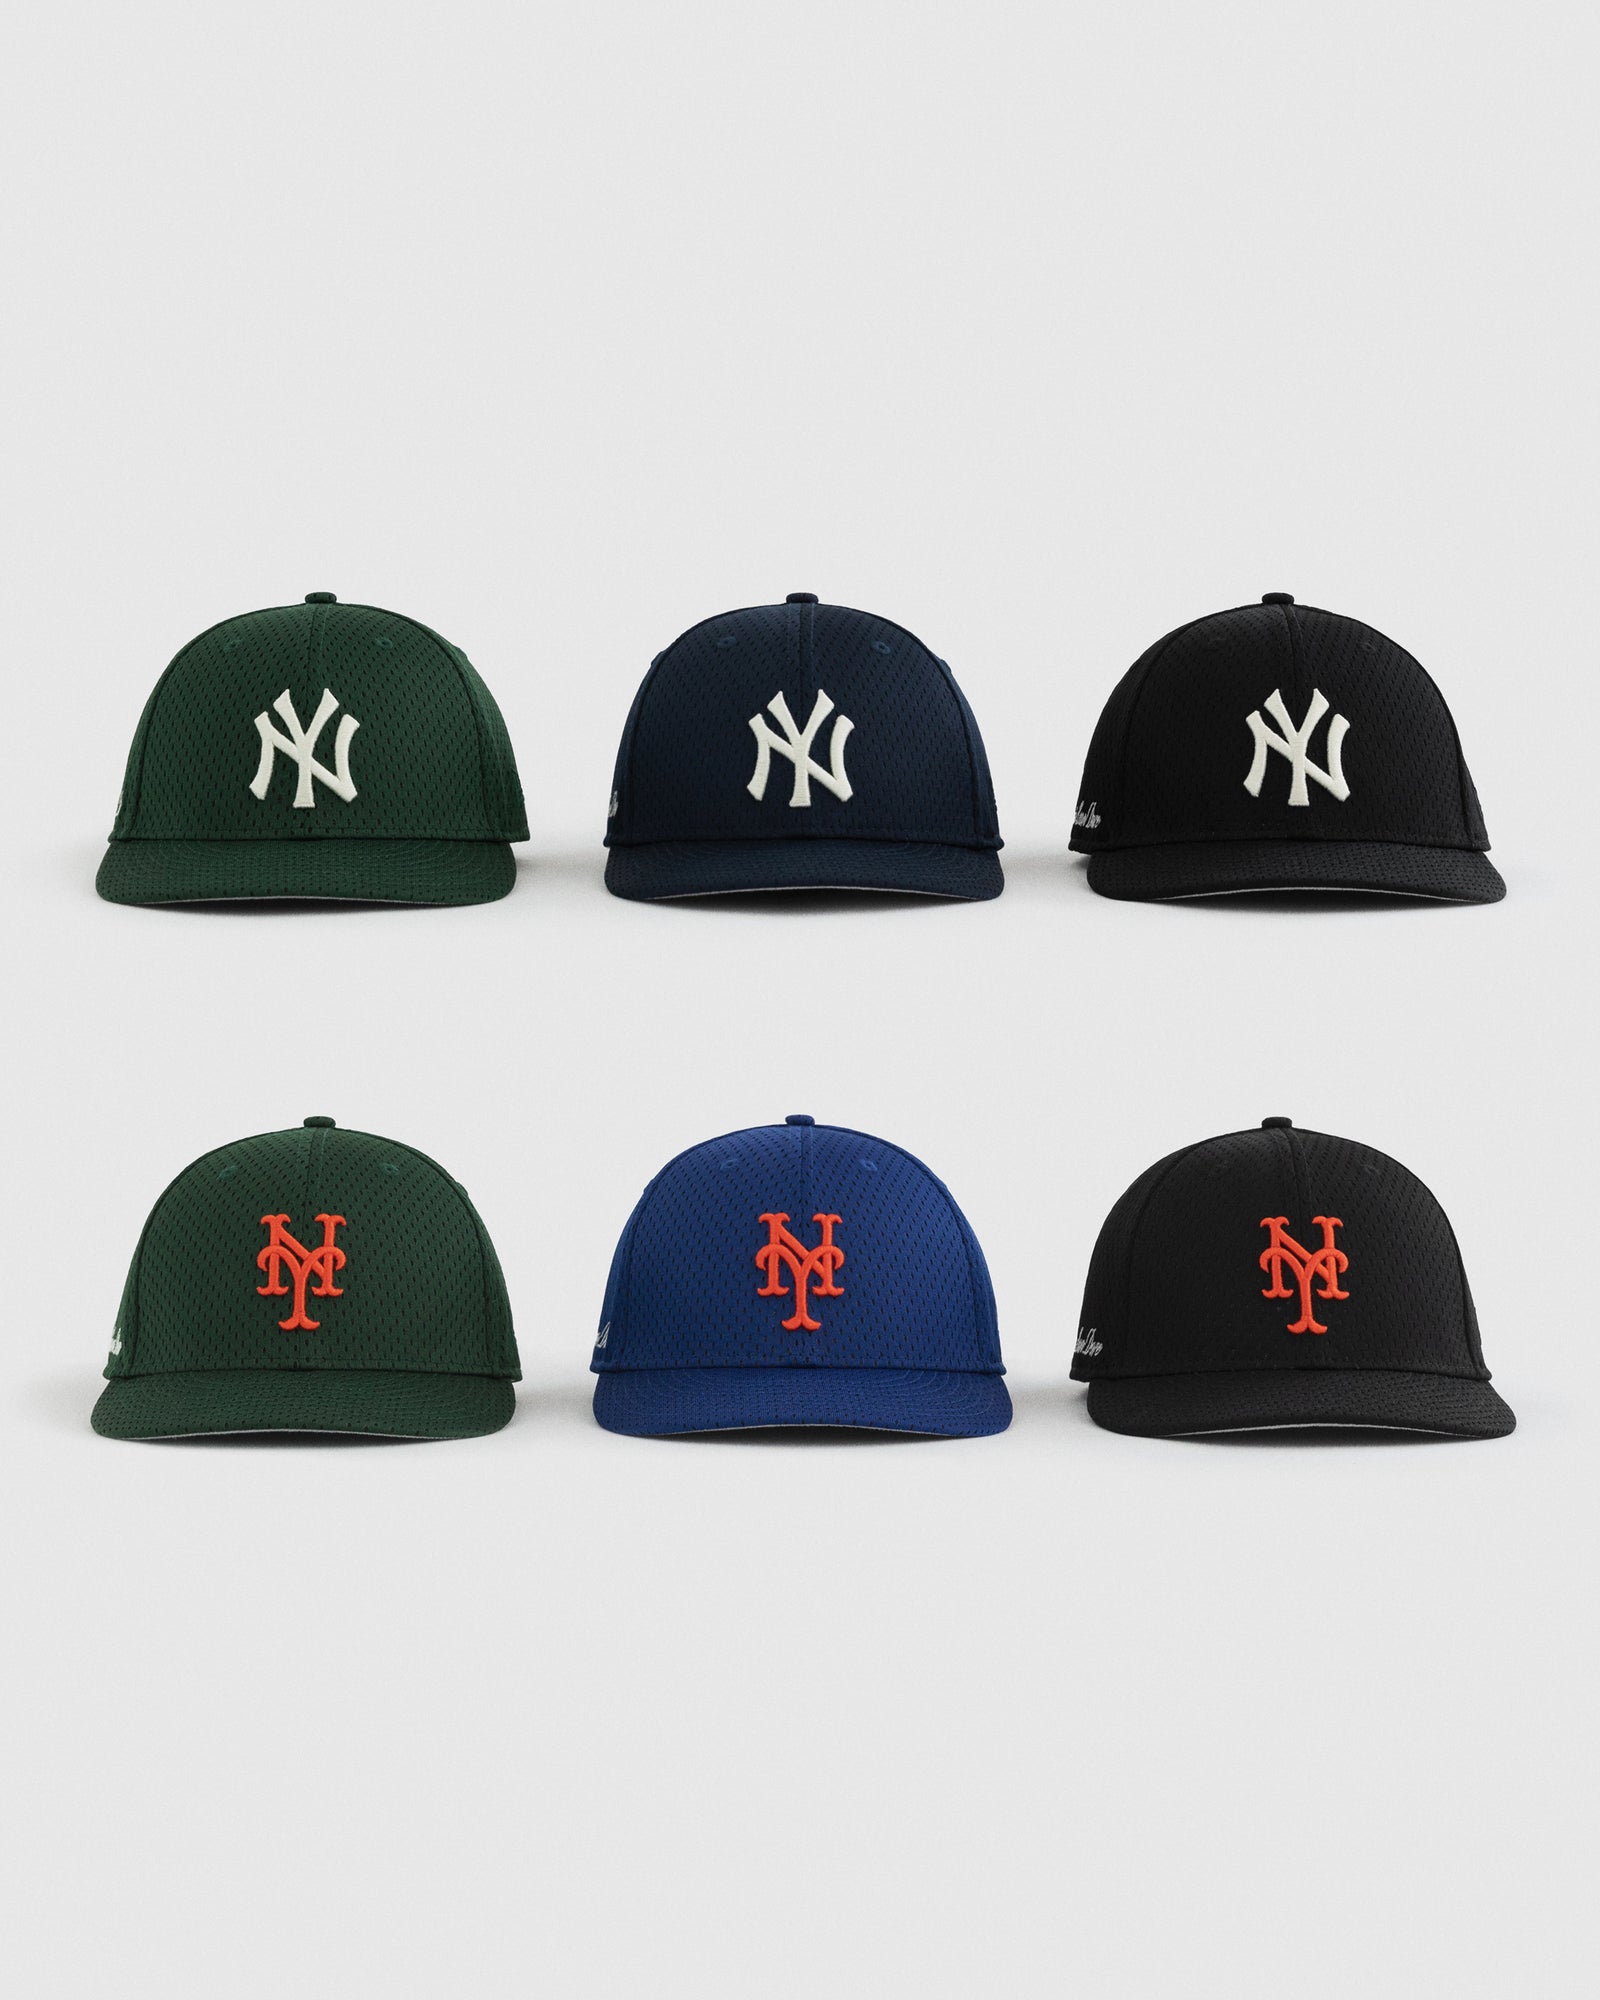 ALD / New Era Mets Mesh Hat